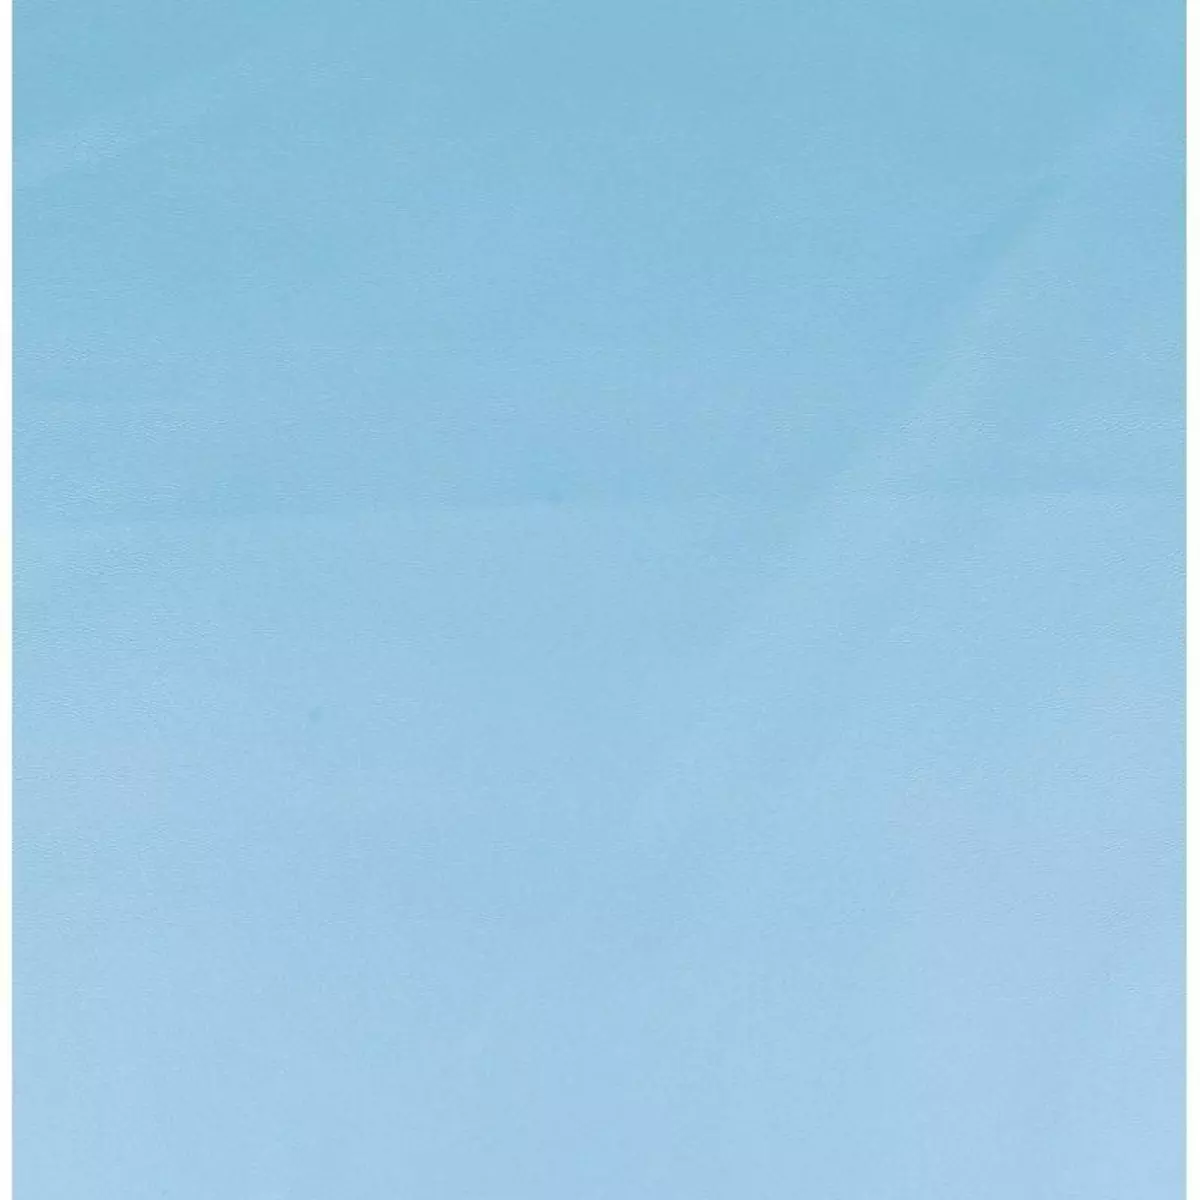  Simili cuir 68 x 50 cm - Bleu clair